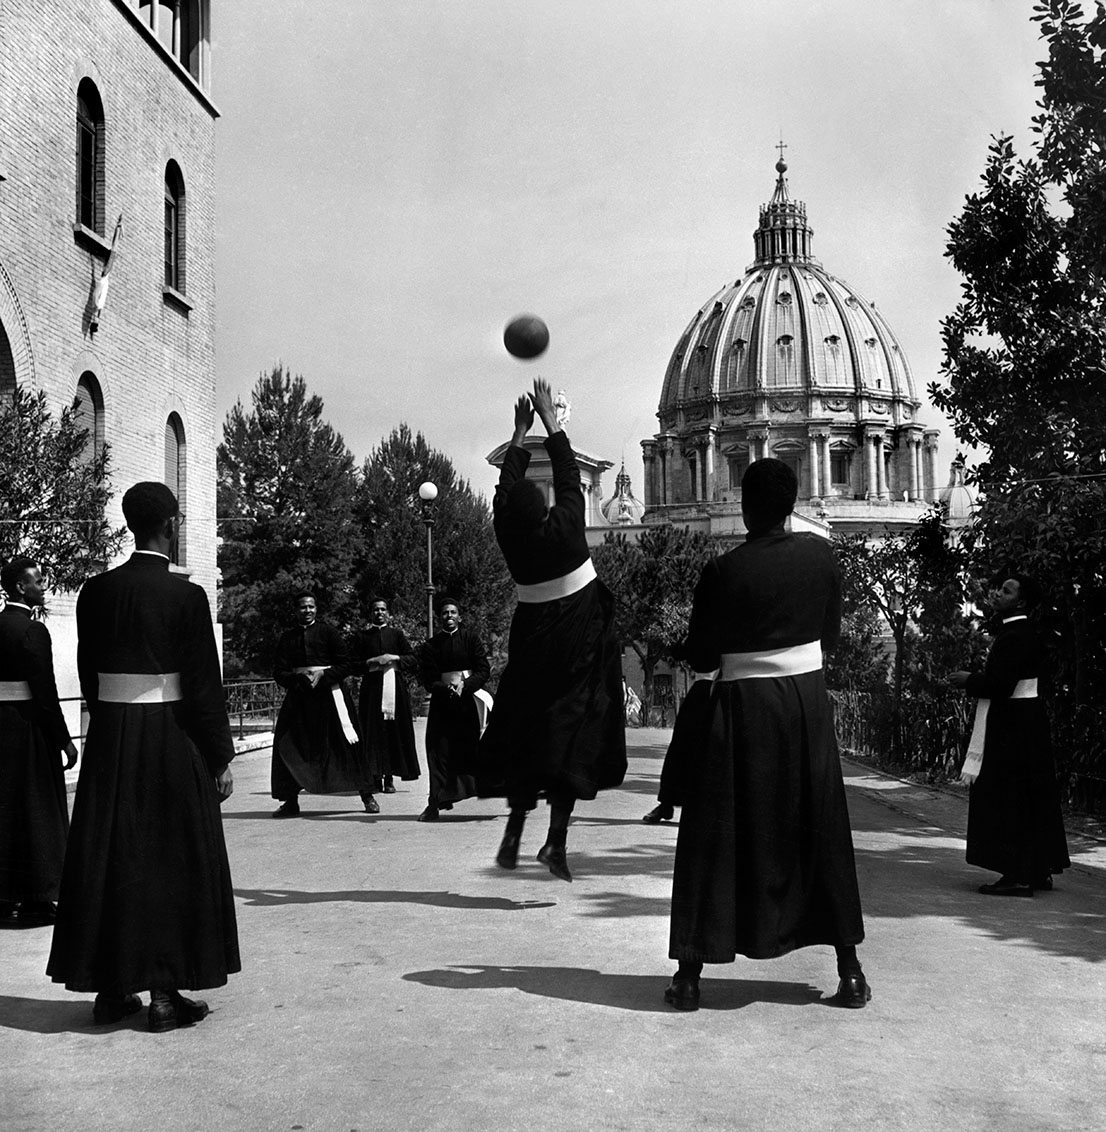 Vaticano, Italia, 1949. David Seymour / Magnum Photos